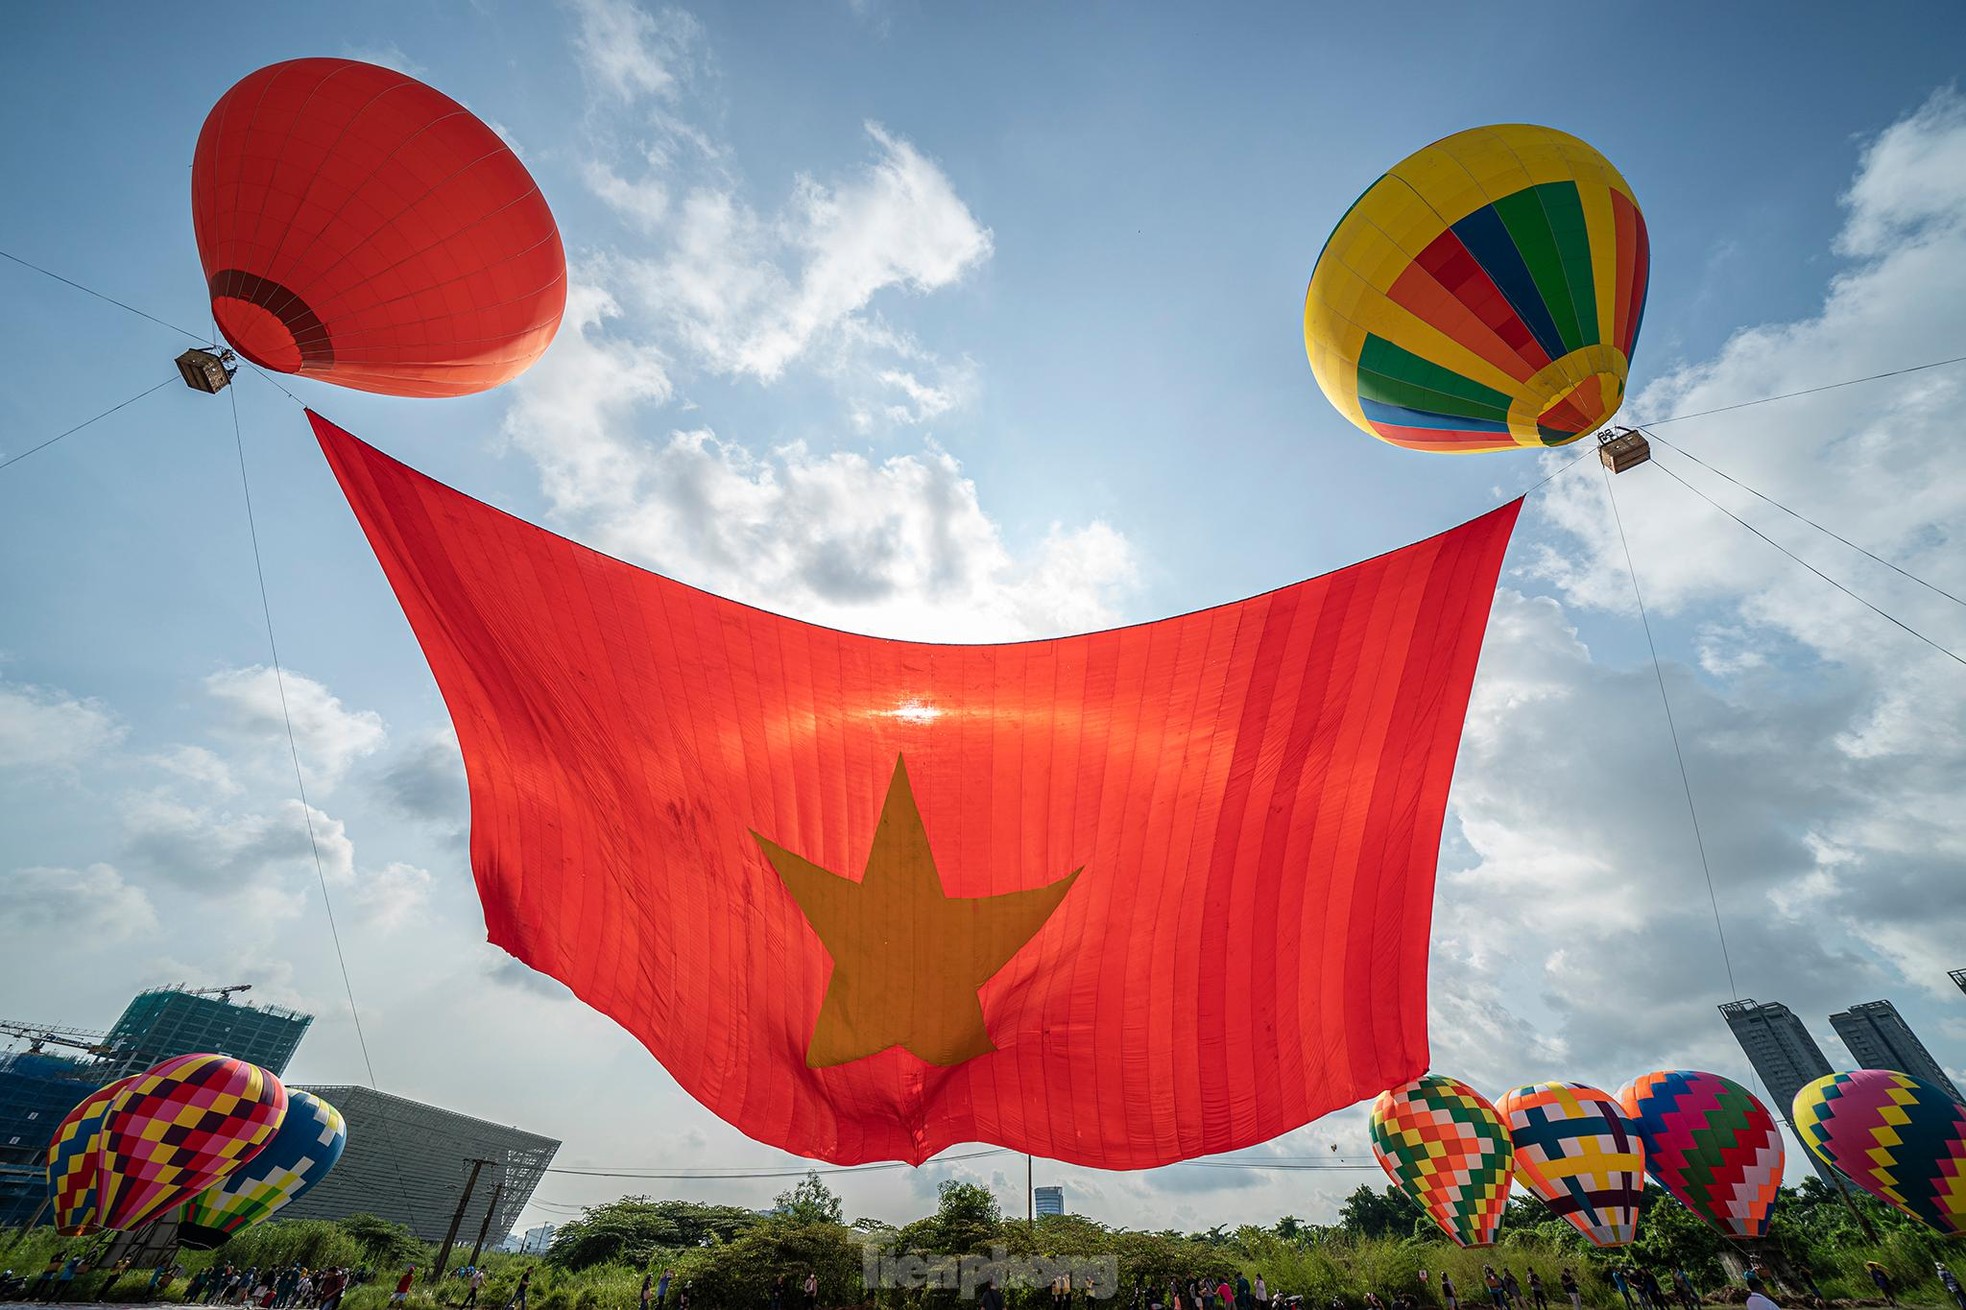 Cận cảnh khinh khí cầu kéo Quốc kỳ rộng 1800m2 mừng Quốc khánh 2/9 - Ảnh 14.